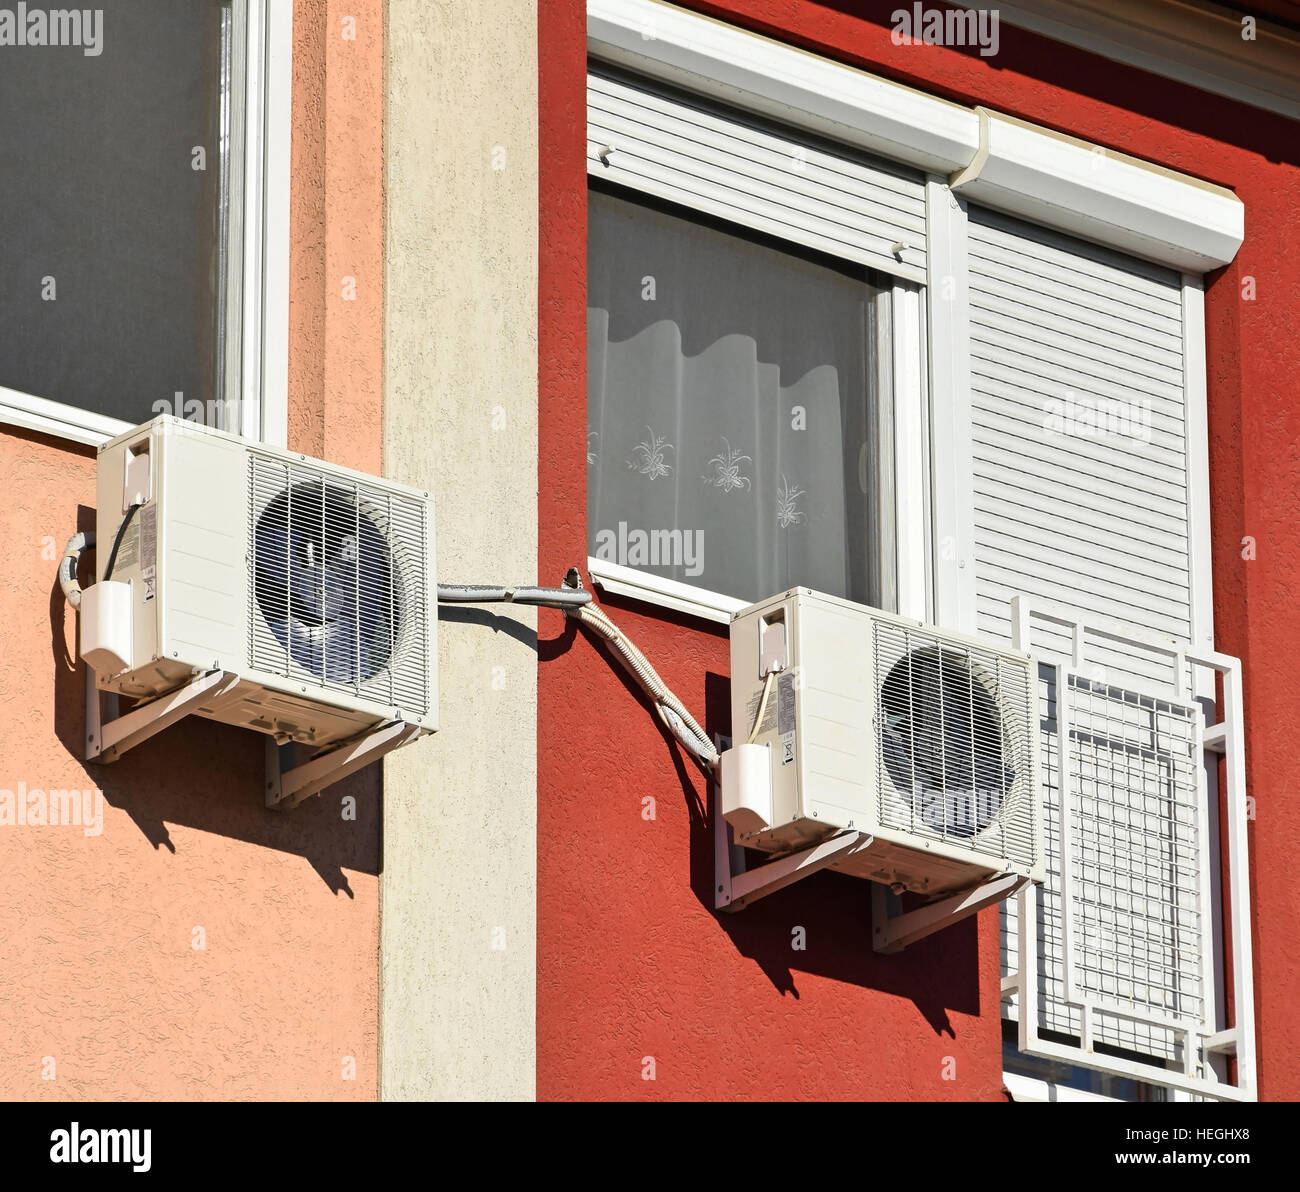 Klimaanlagen auf der Wand eines Gebäudes Stockfoto